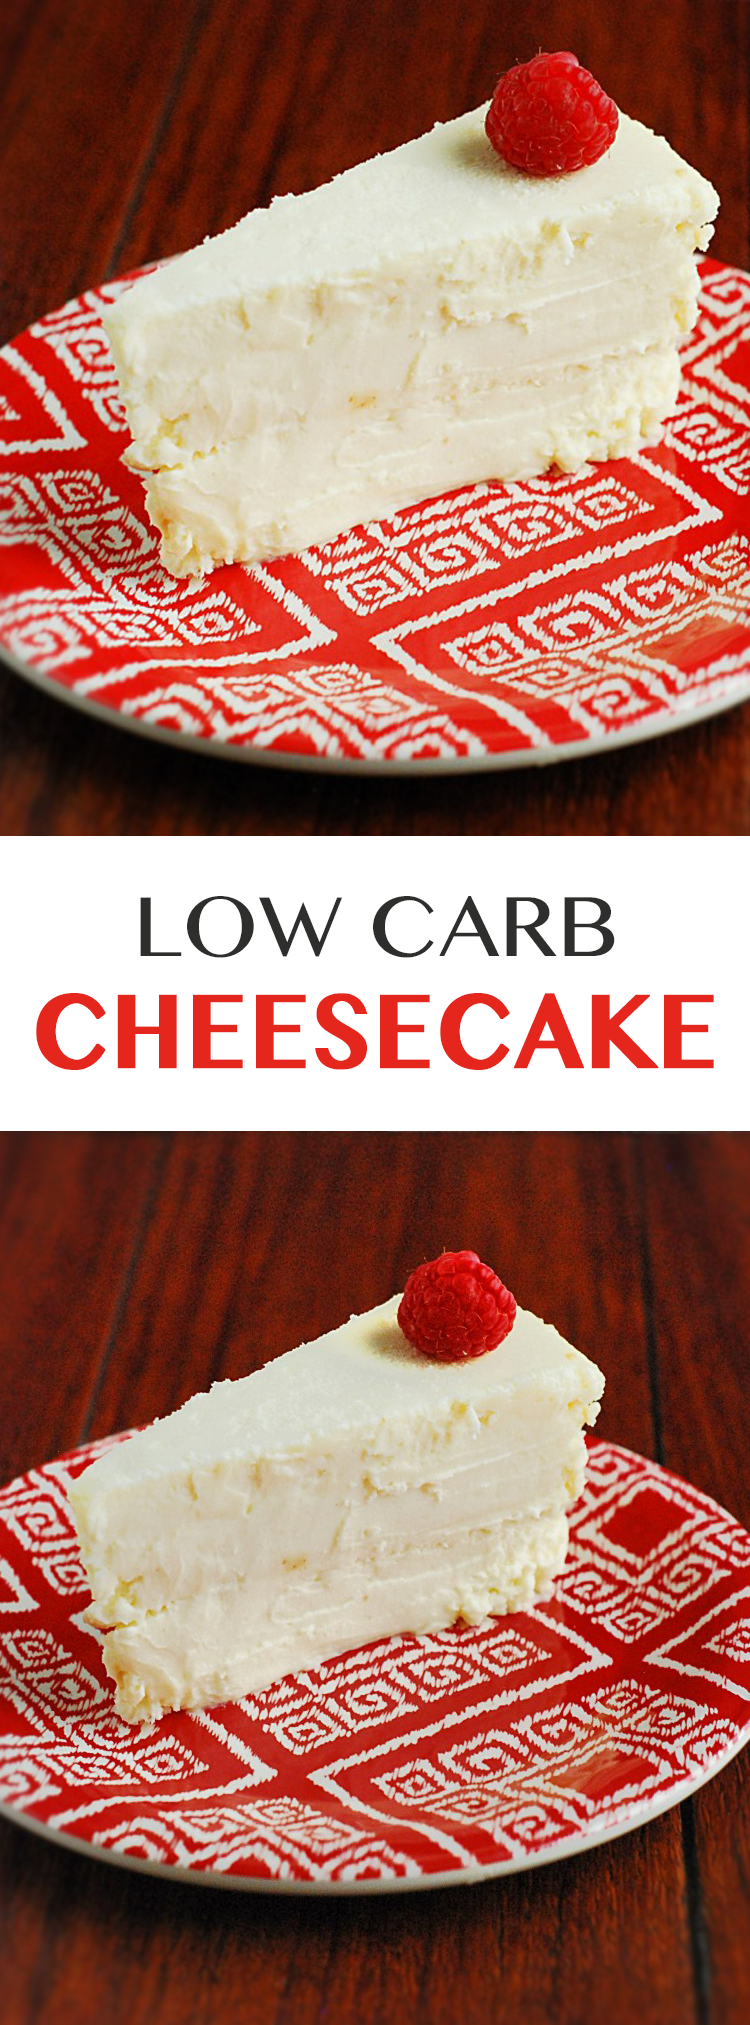 22 low carb dessert recipes
 ideas